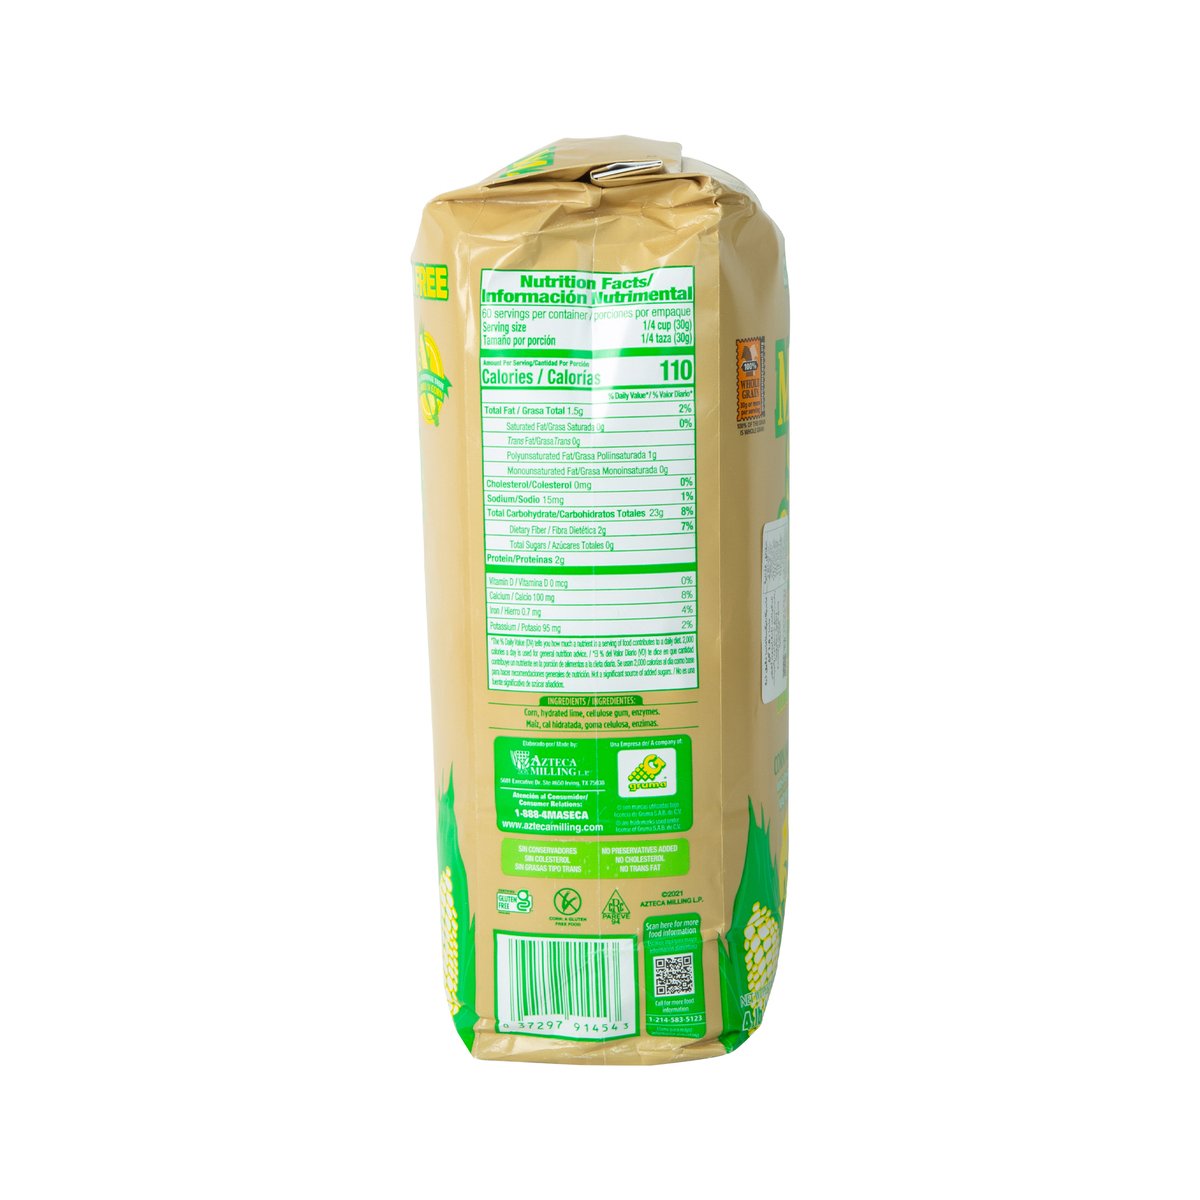 Maseca Nixta Masa Corn Flour 1.8 kg